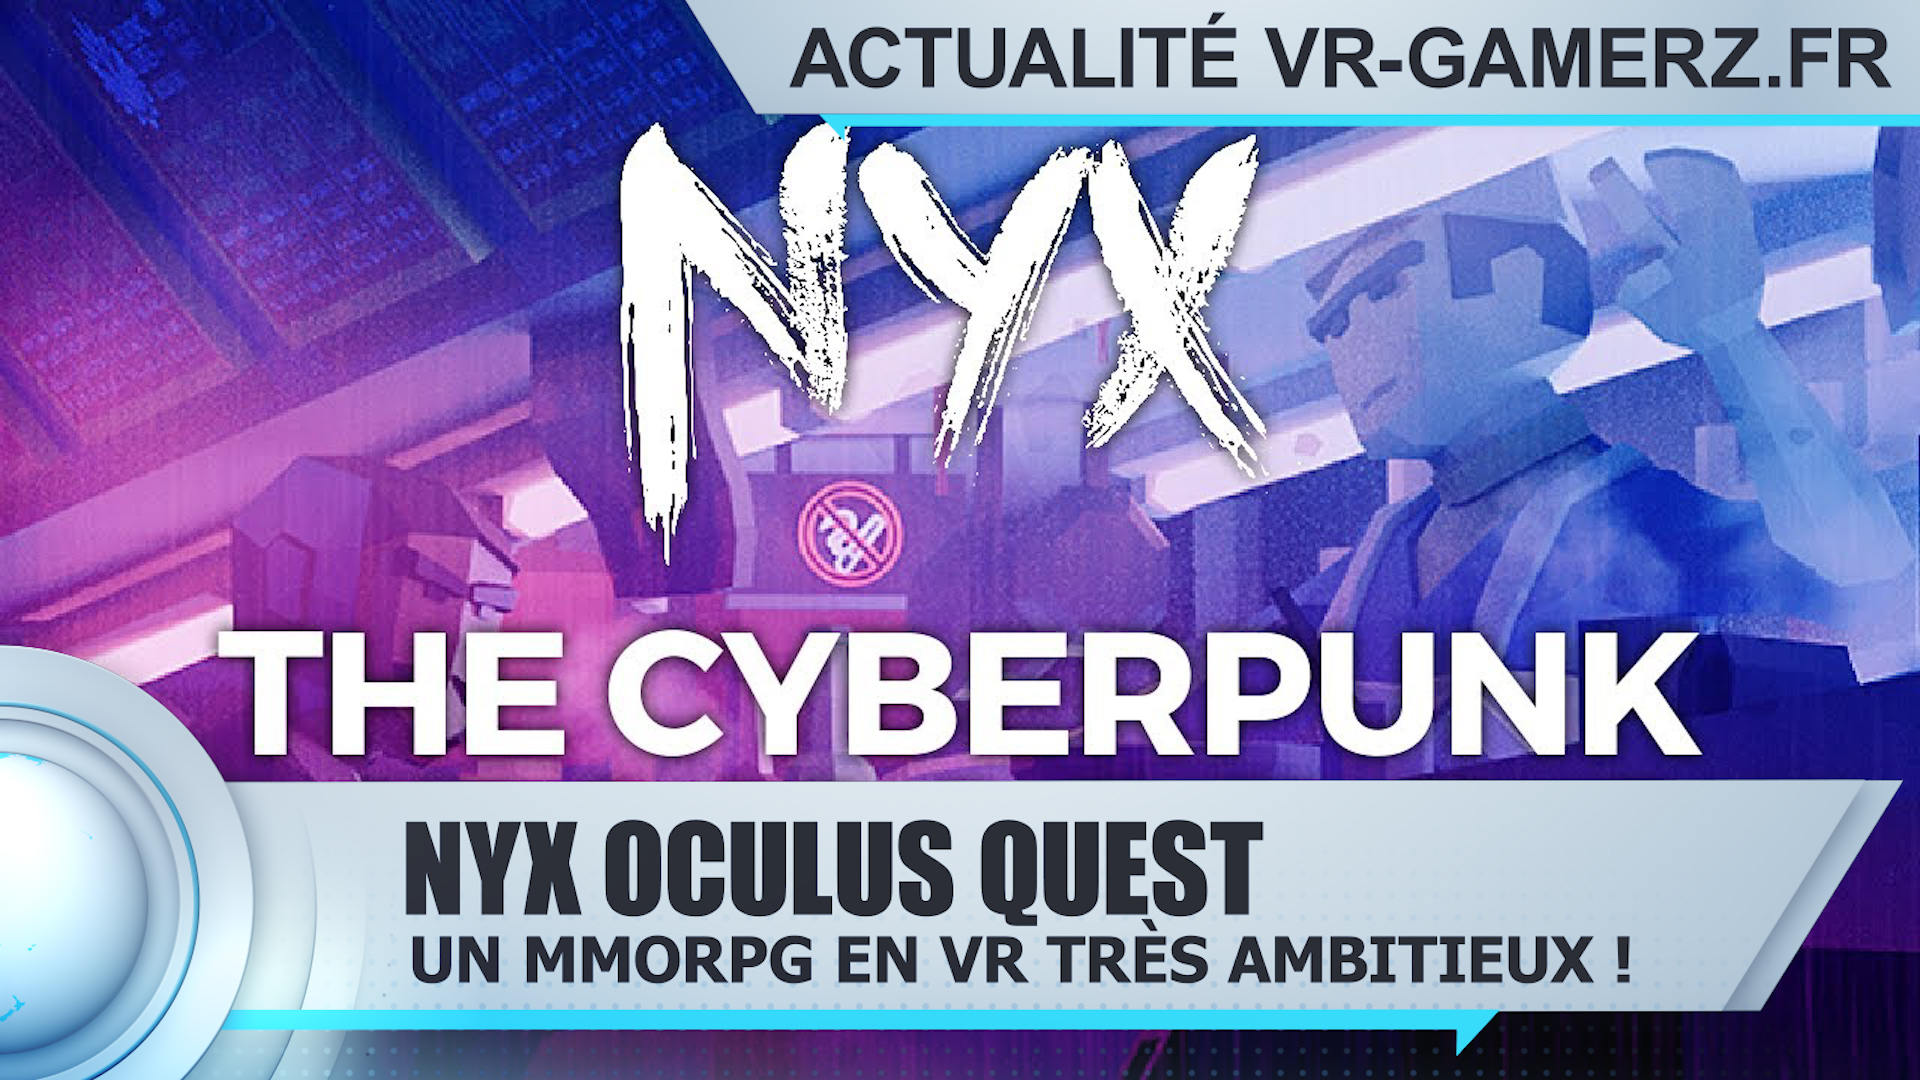 NYX : Un MMORPG en réalité virtuelle très ambitieux !